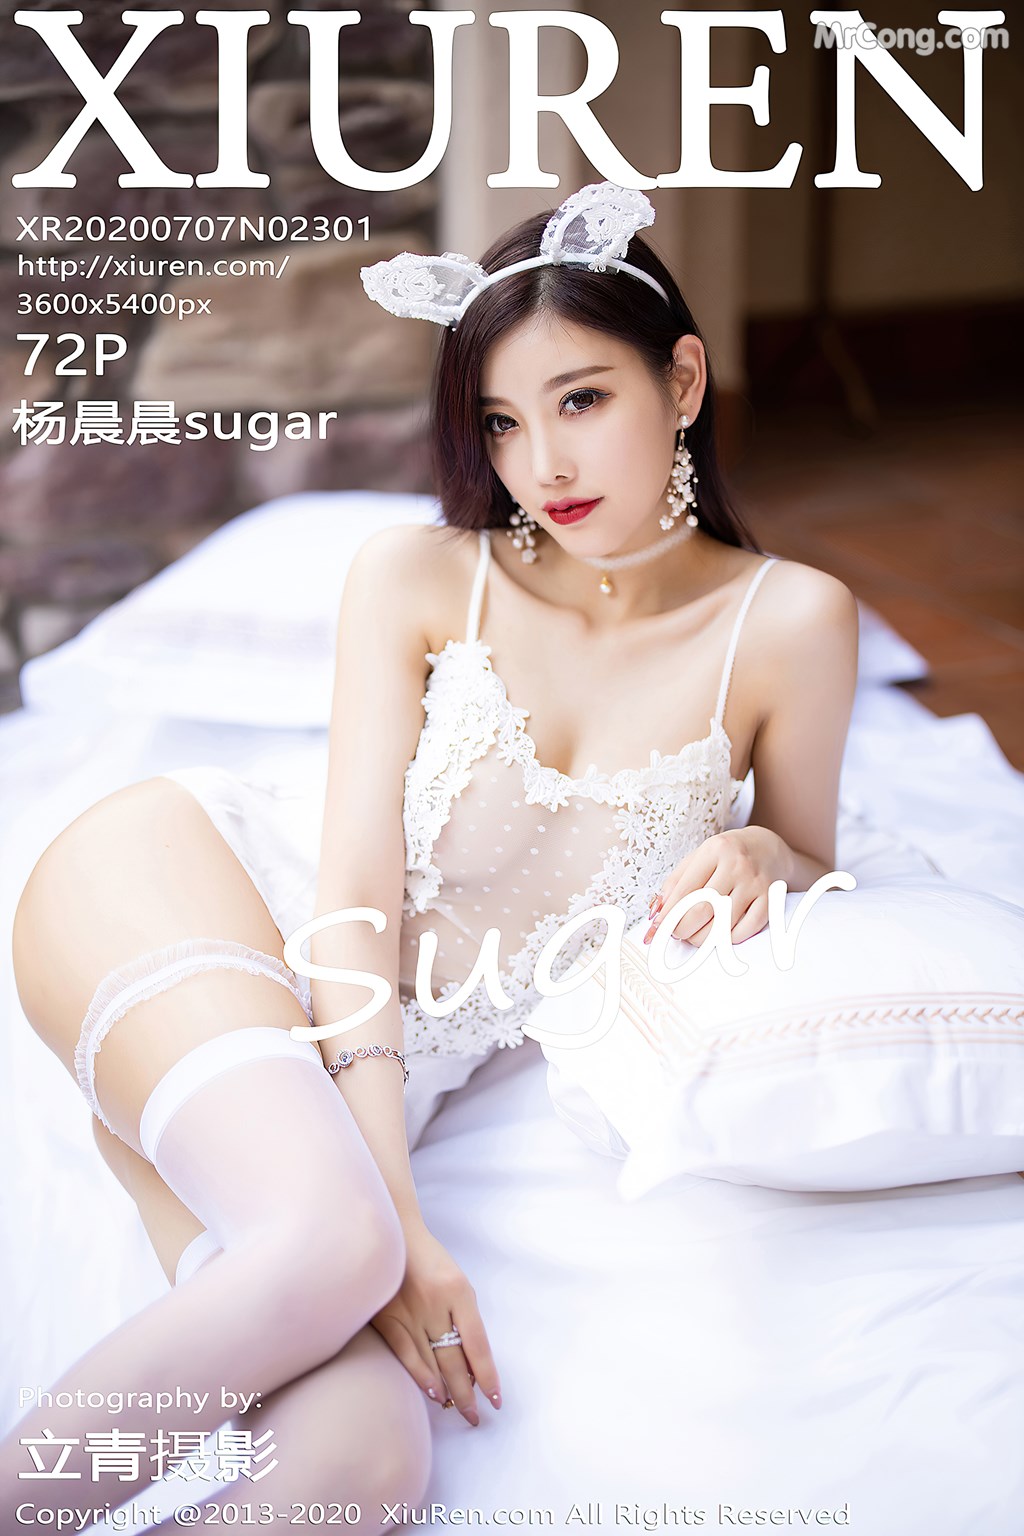 [XIUREN] No.2301 Yang Chen Chen 杨晨晨sugar Cover Photo